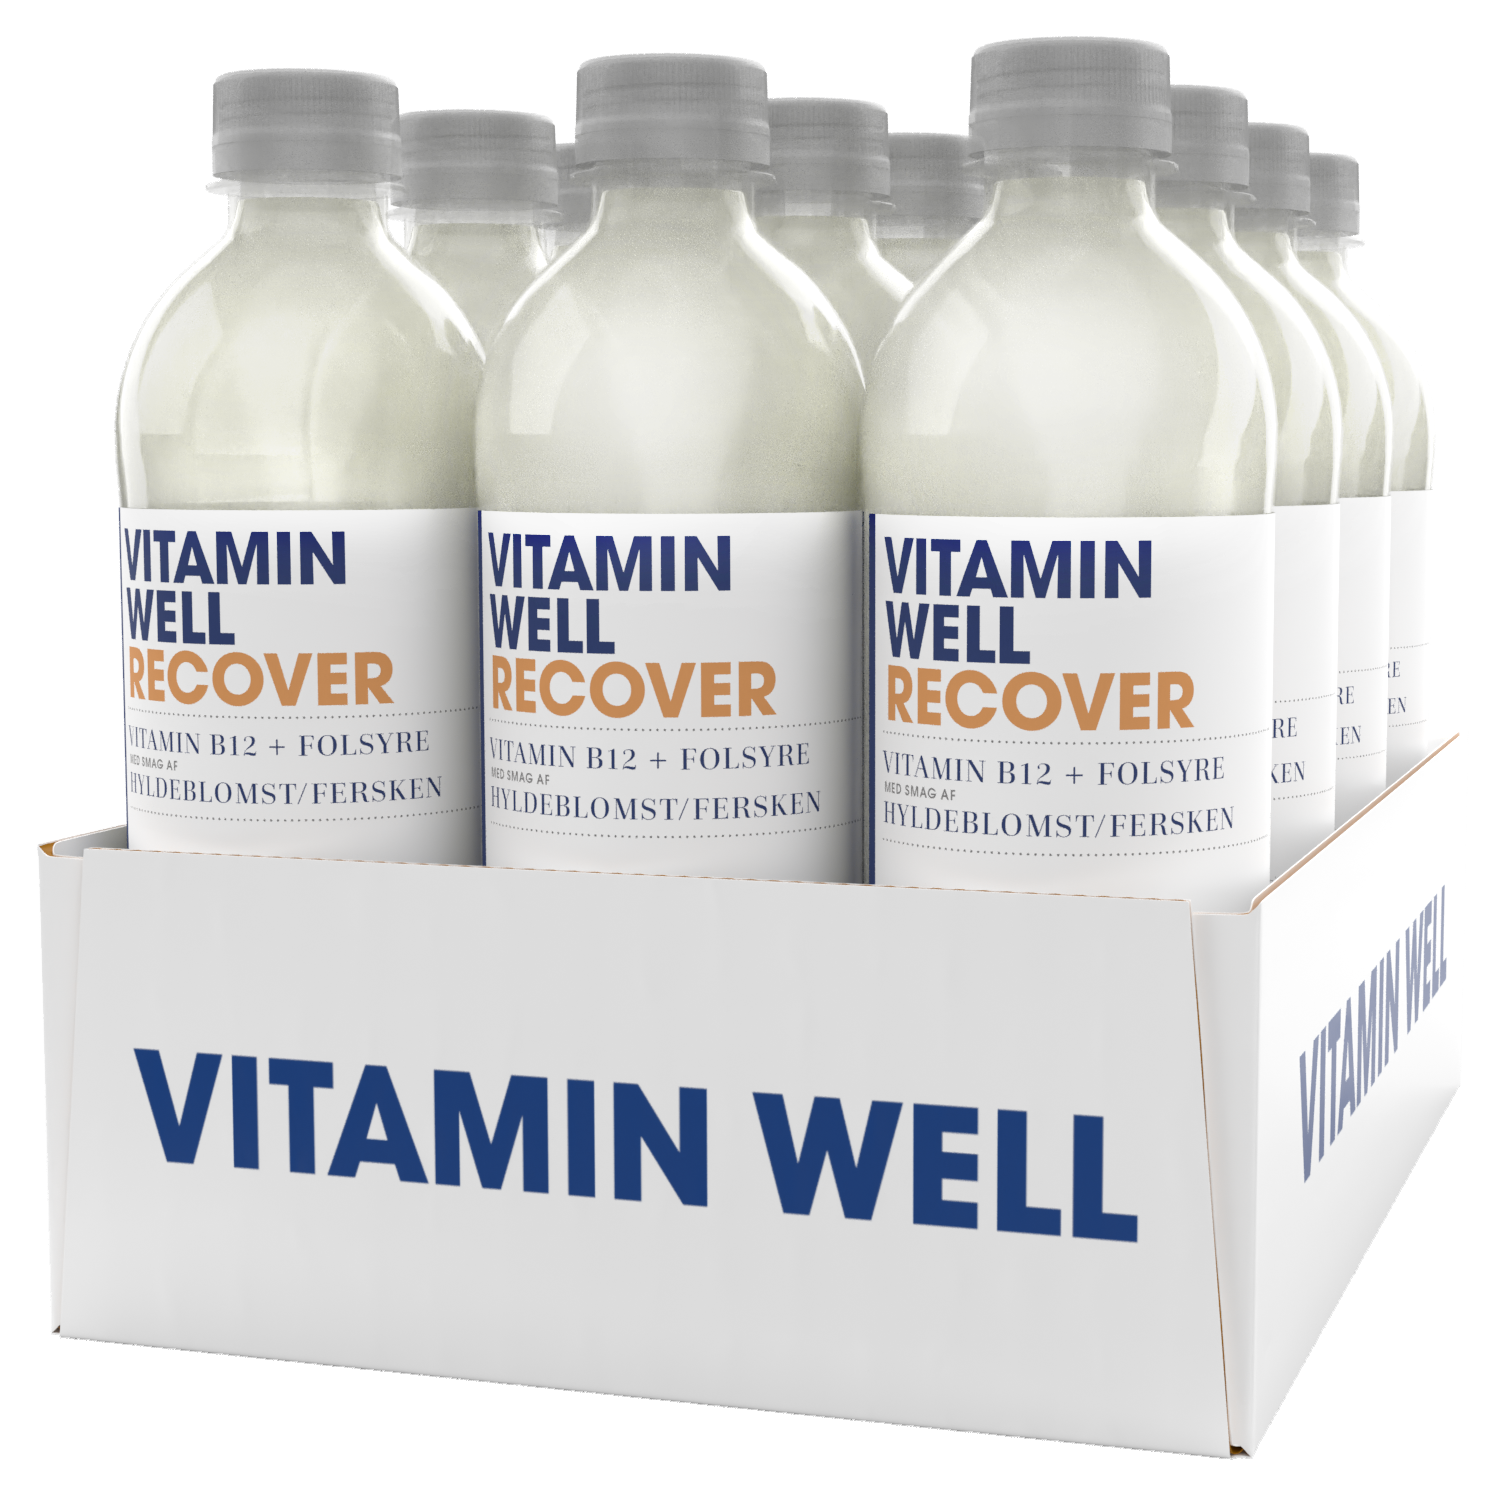 Brug Vitamin Well Recover (12x 500ml) til en forbedret oplevelse